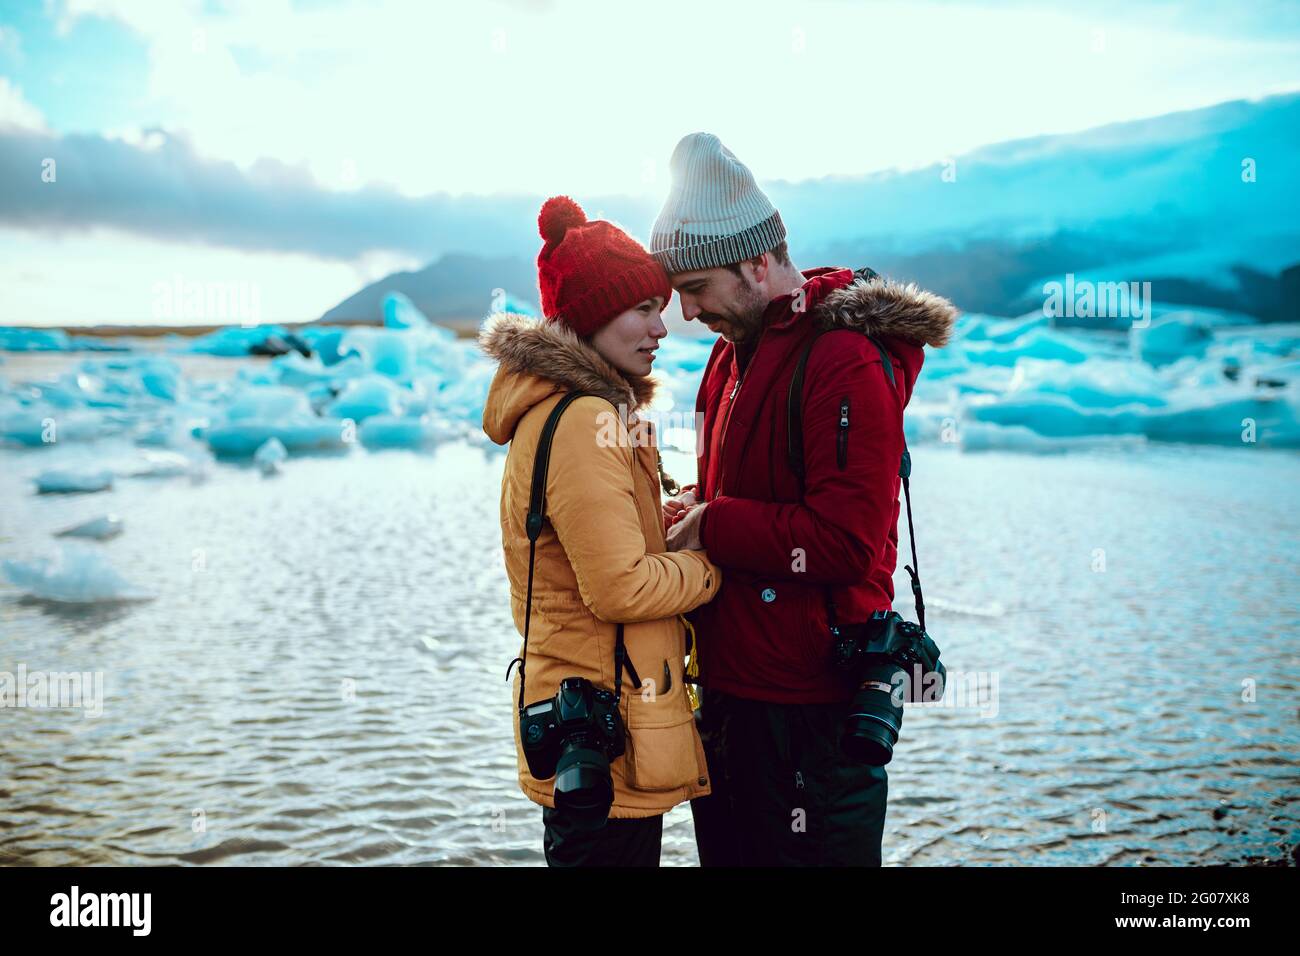 Seitenansicht des jungen Mannes und der Frau im Winter mit professionellen Kameras, die am Ufer in der Nähe des Wassers mit Eis stehen Stockfoto